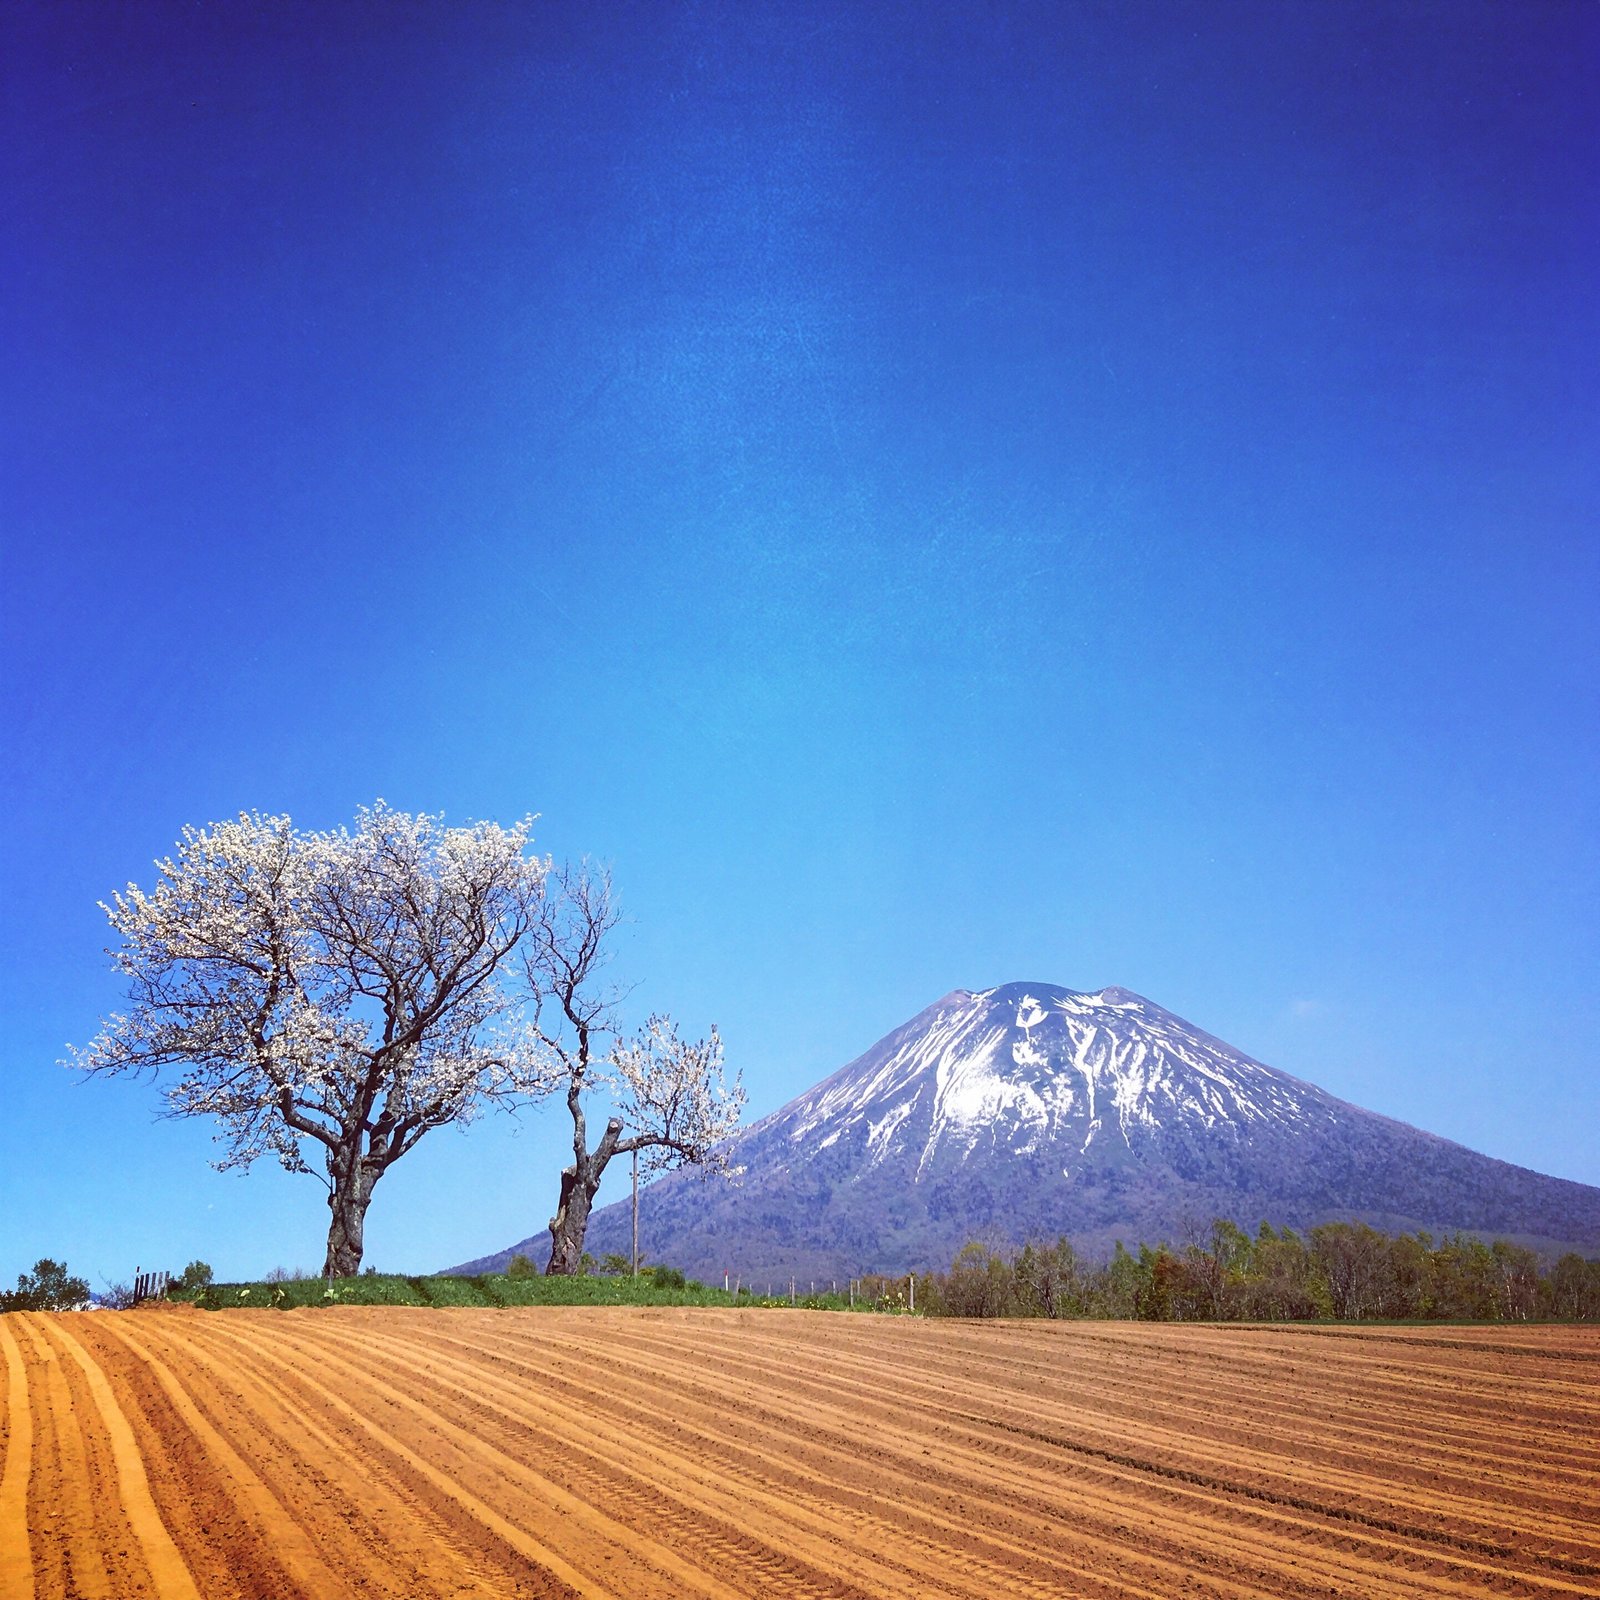 到北海道看富士山 富士山的雙胞胎 羊蹄山 及周邊景點介紹 Vacation Niseko